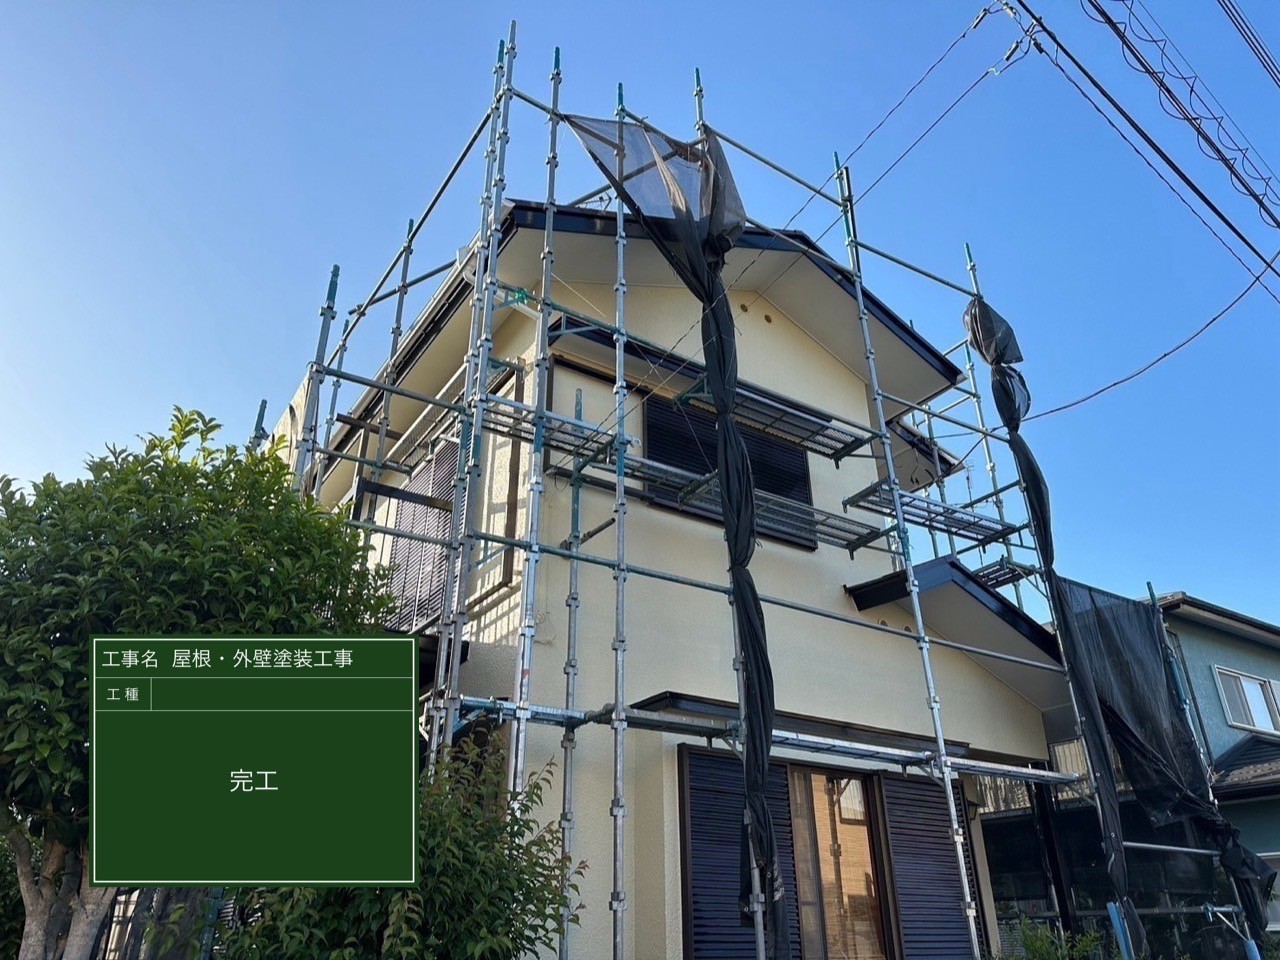 千葉県八街市にて屋根修理・塗装工事〈貫板交換と屋根壁塗装工事〉の施工後写真